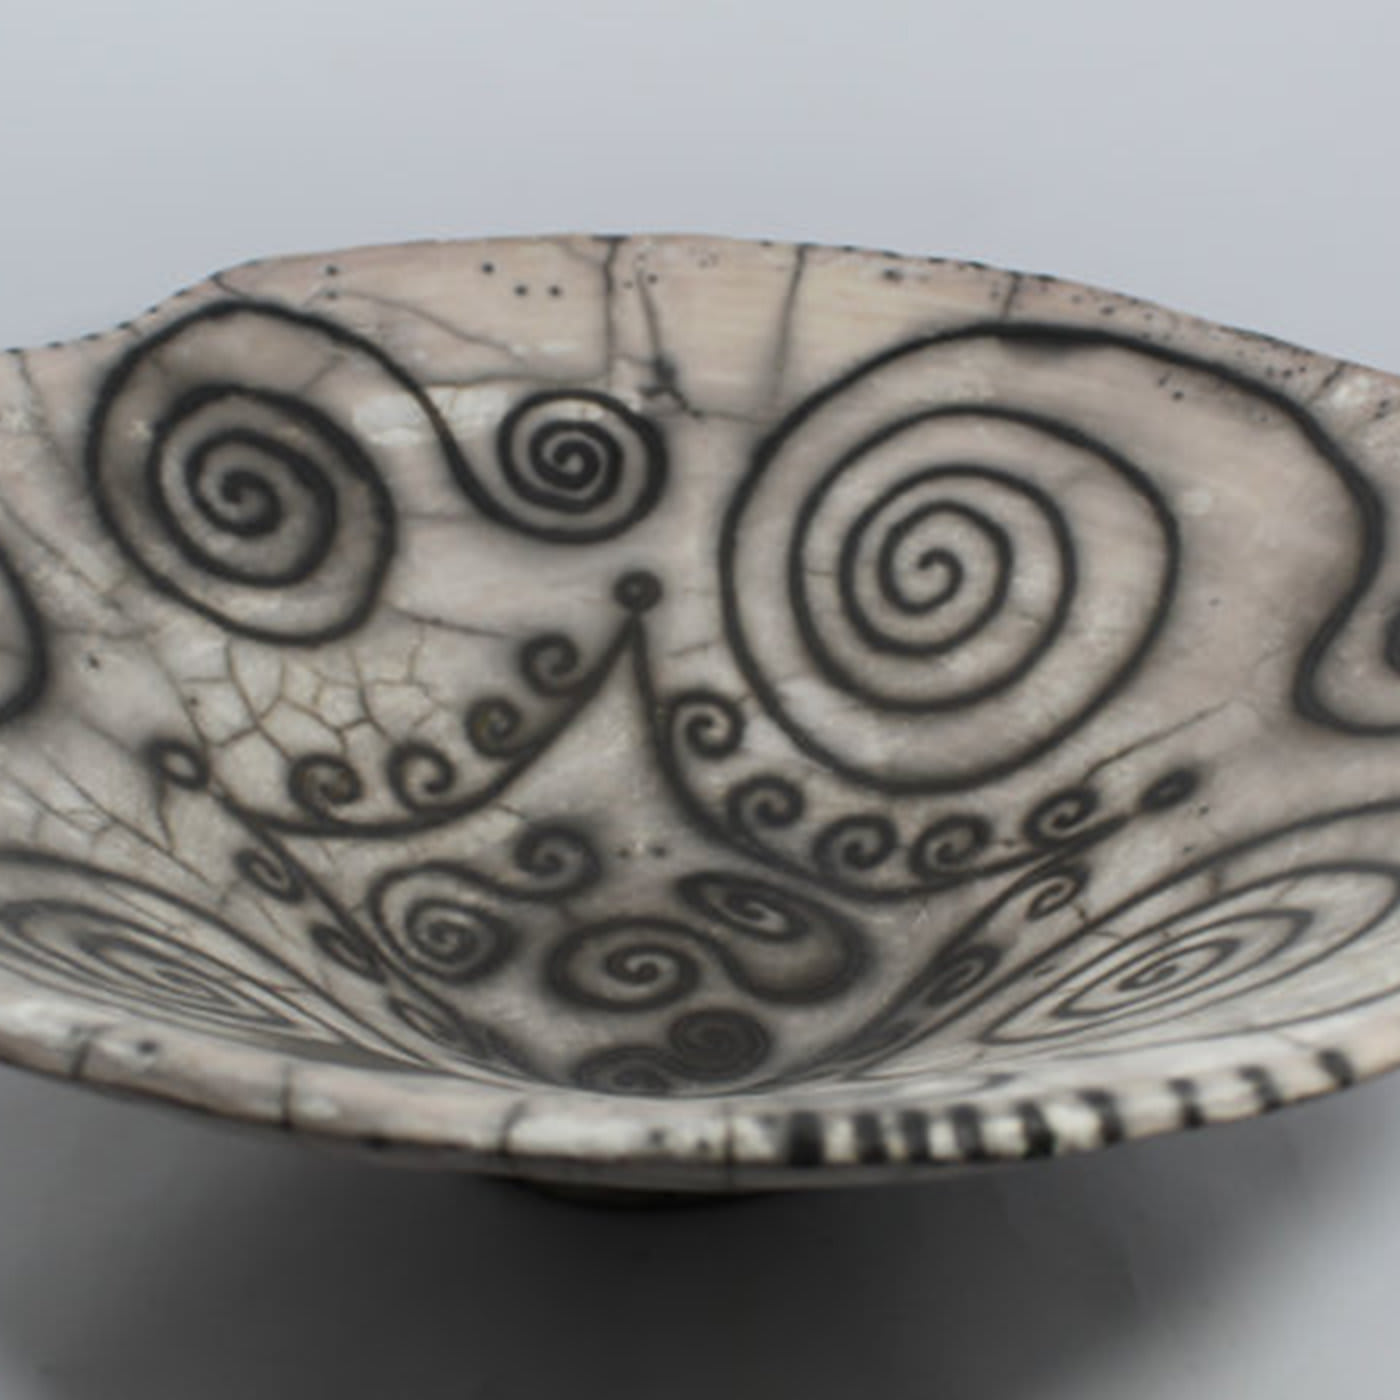 David ceramic bowl - Ceramiche Artistiche Giannini